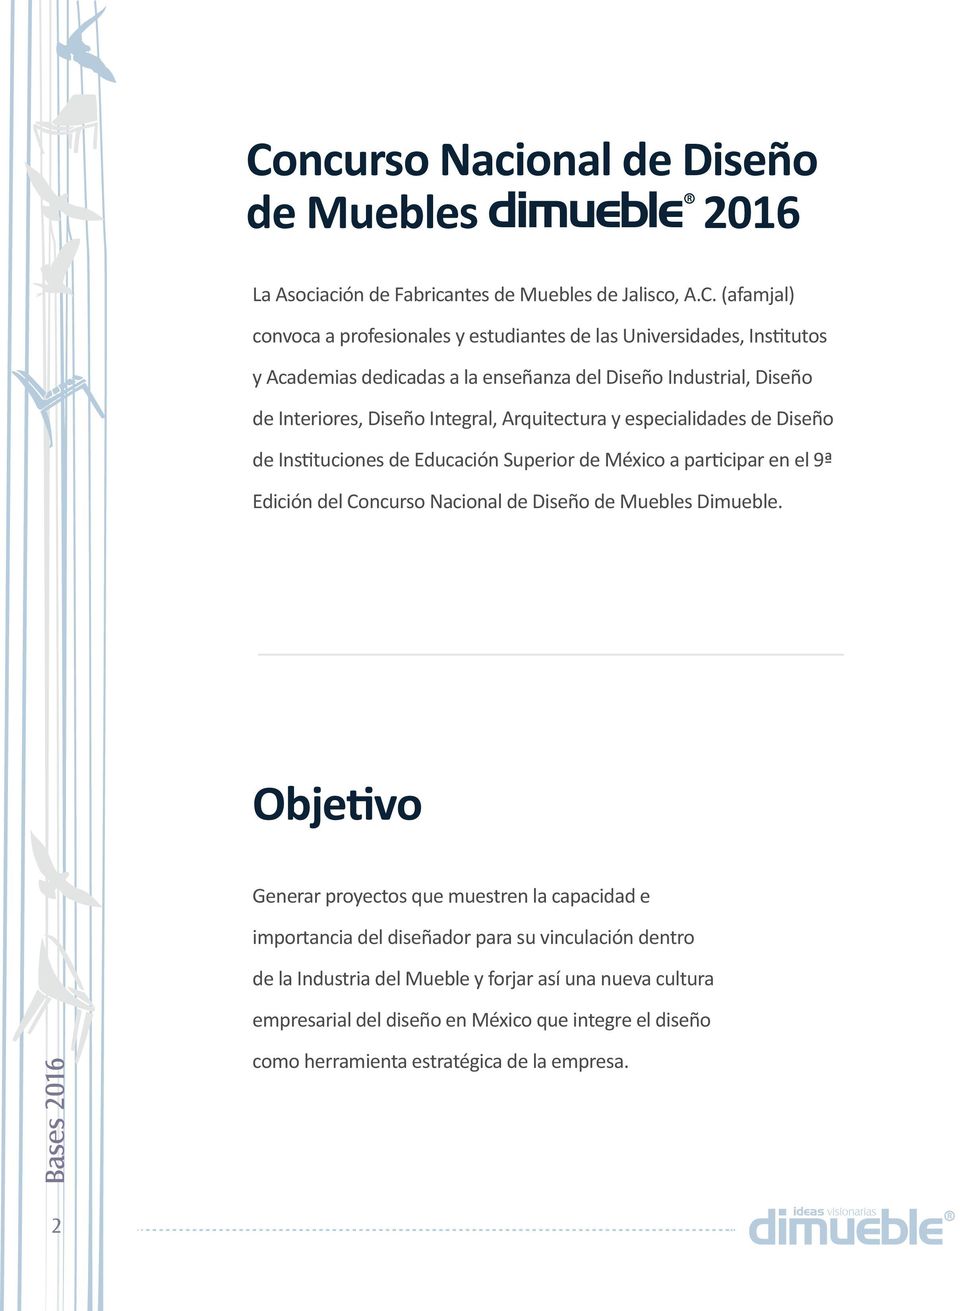 Superior de México a participar en el 9ª Edición del Concurso Nacional de Diseño de Muebles Dimueble.